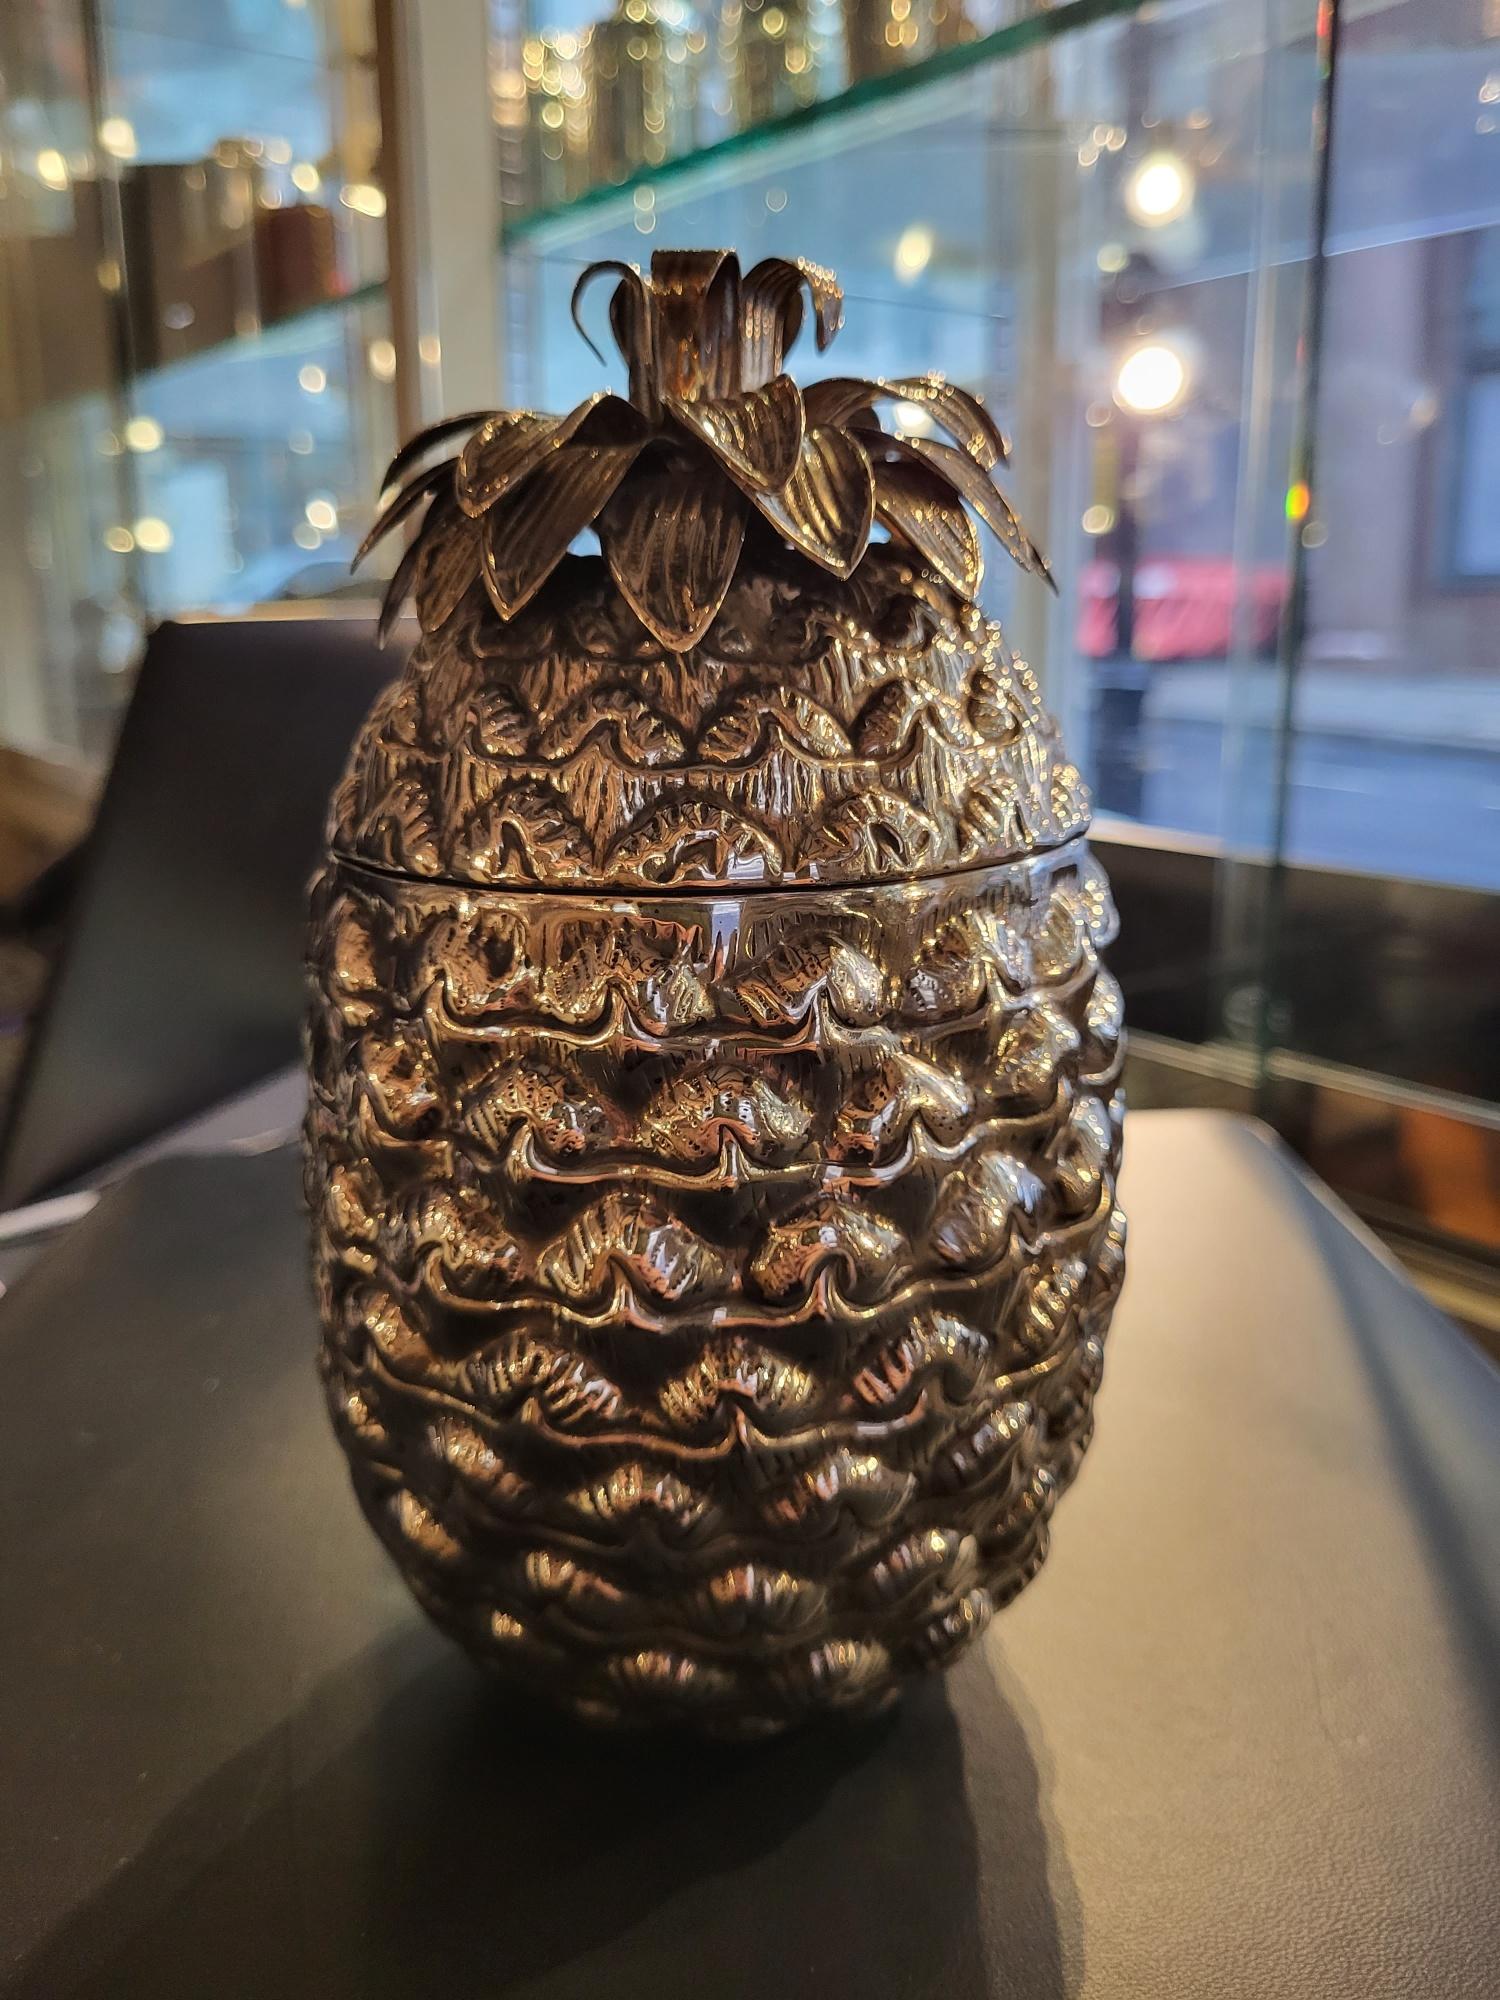 Alessandria, Italien

Eine äußerst ungewöhnliche und dekorative silberne Dose mit Deckel in Form einer Ananas, die auch als persönlicher Eimer für Eiswürfel verwendet werden kann, mit einem realistisch modellierten Körper mit einer Krone aus